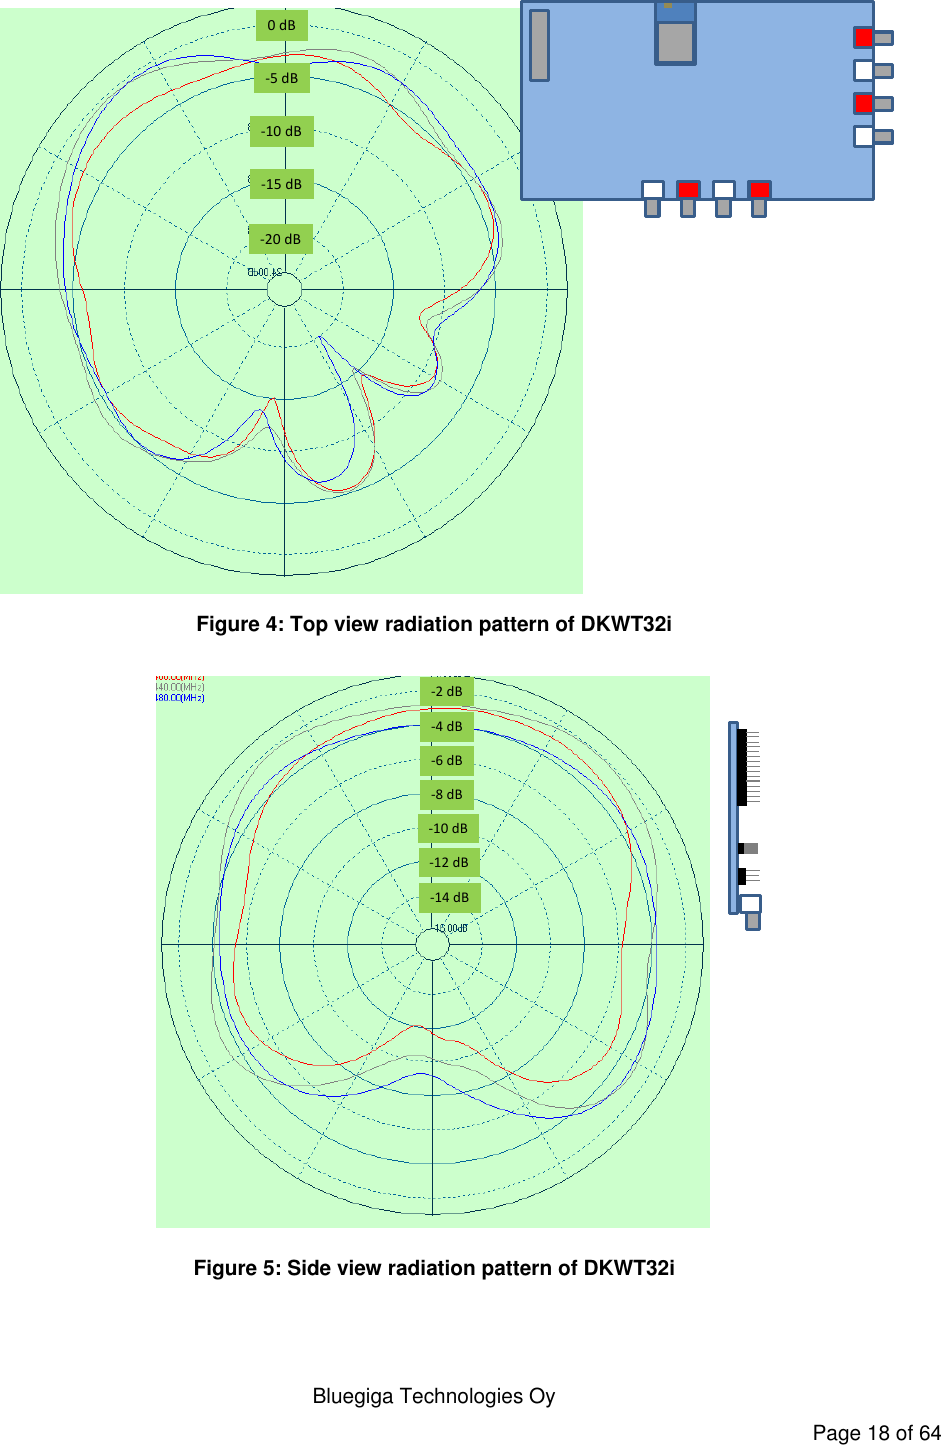   Bluegiga Technologies Oy Page 18 of 64 0 dB-5 dB-10 dB-15 dB-20 dB Figure 4: Top view radiation pattern of DKWT32i -2 dB-4 dB-6 dB-8 dB-10 dB-12 dB-14 dB Figure 5: Side view radiation pattern of DKWT32i  